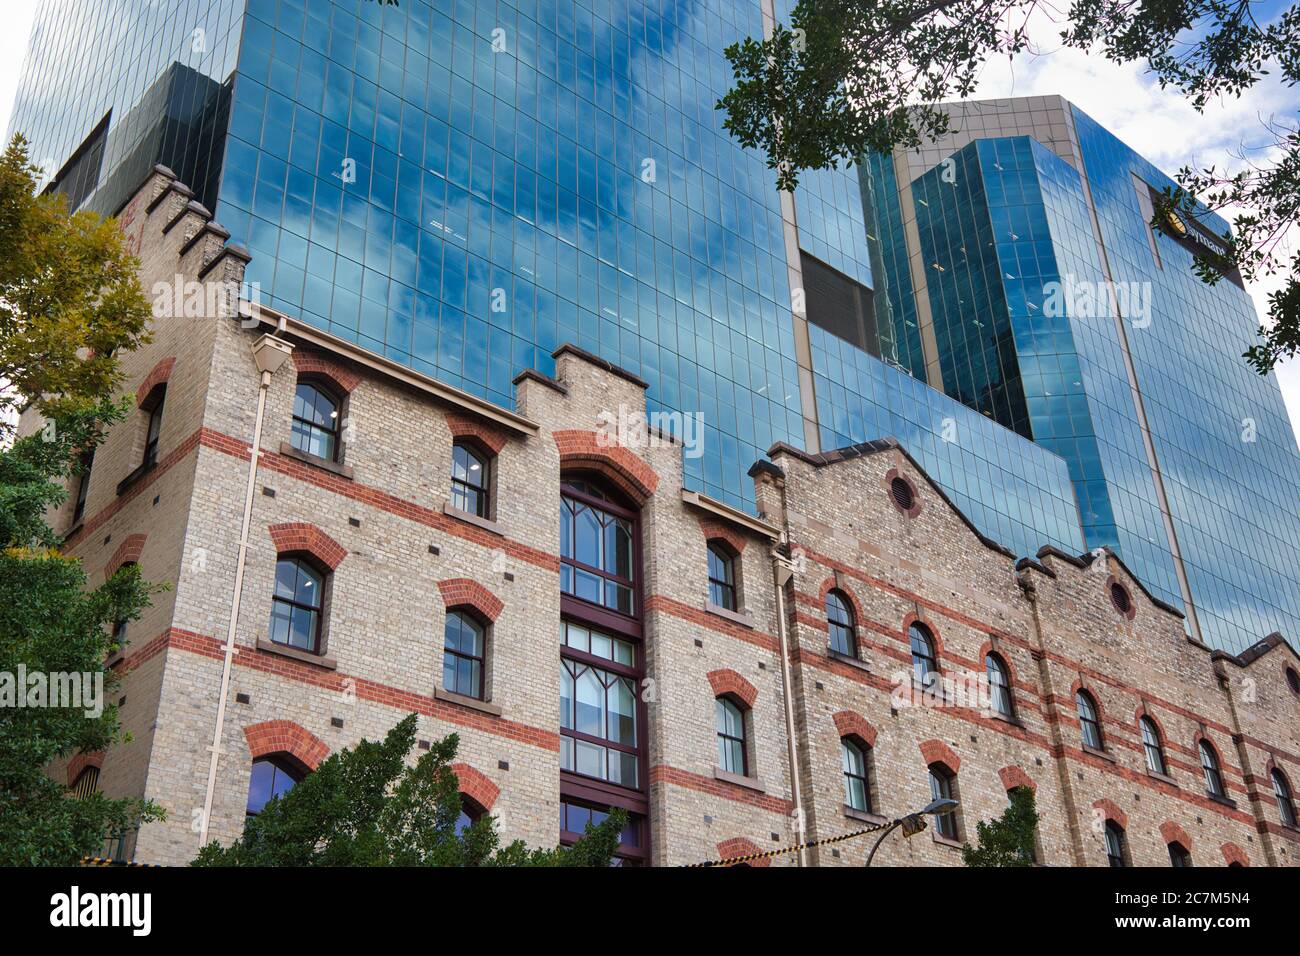 Alte und neue Gebäude in der Rocks Gegend von Sydney, hohe Glasfassade hinter einer Fassade aus dem frühen 19. Jahrhundert, in Sydney, New South Wales, Australien Stockfoto